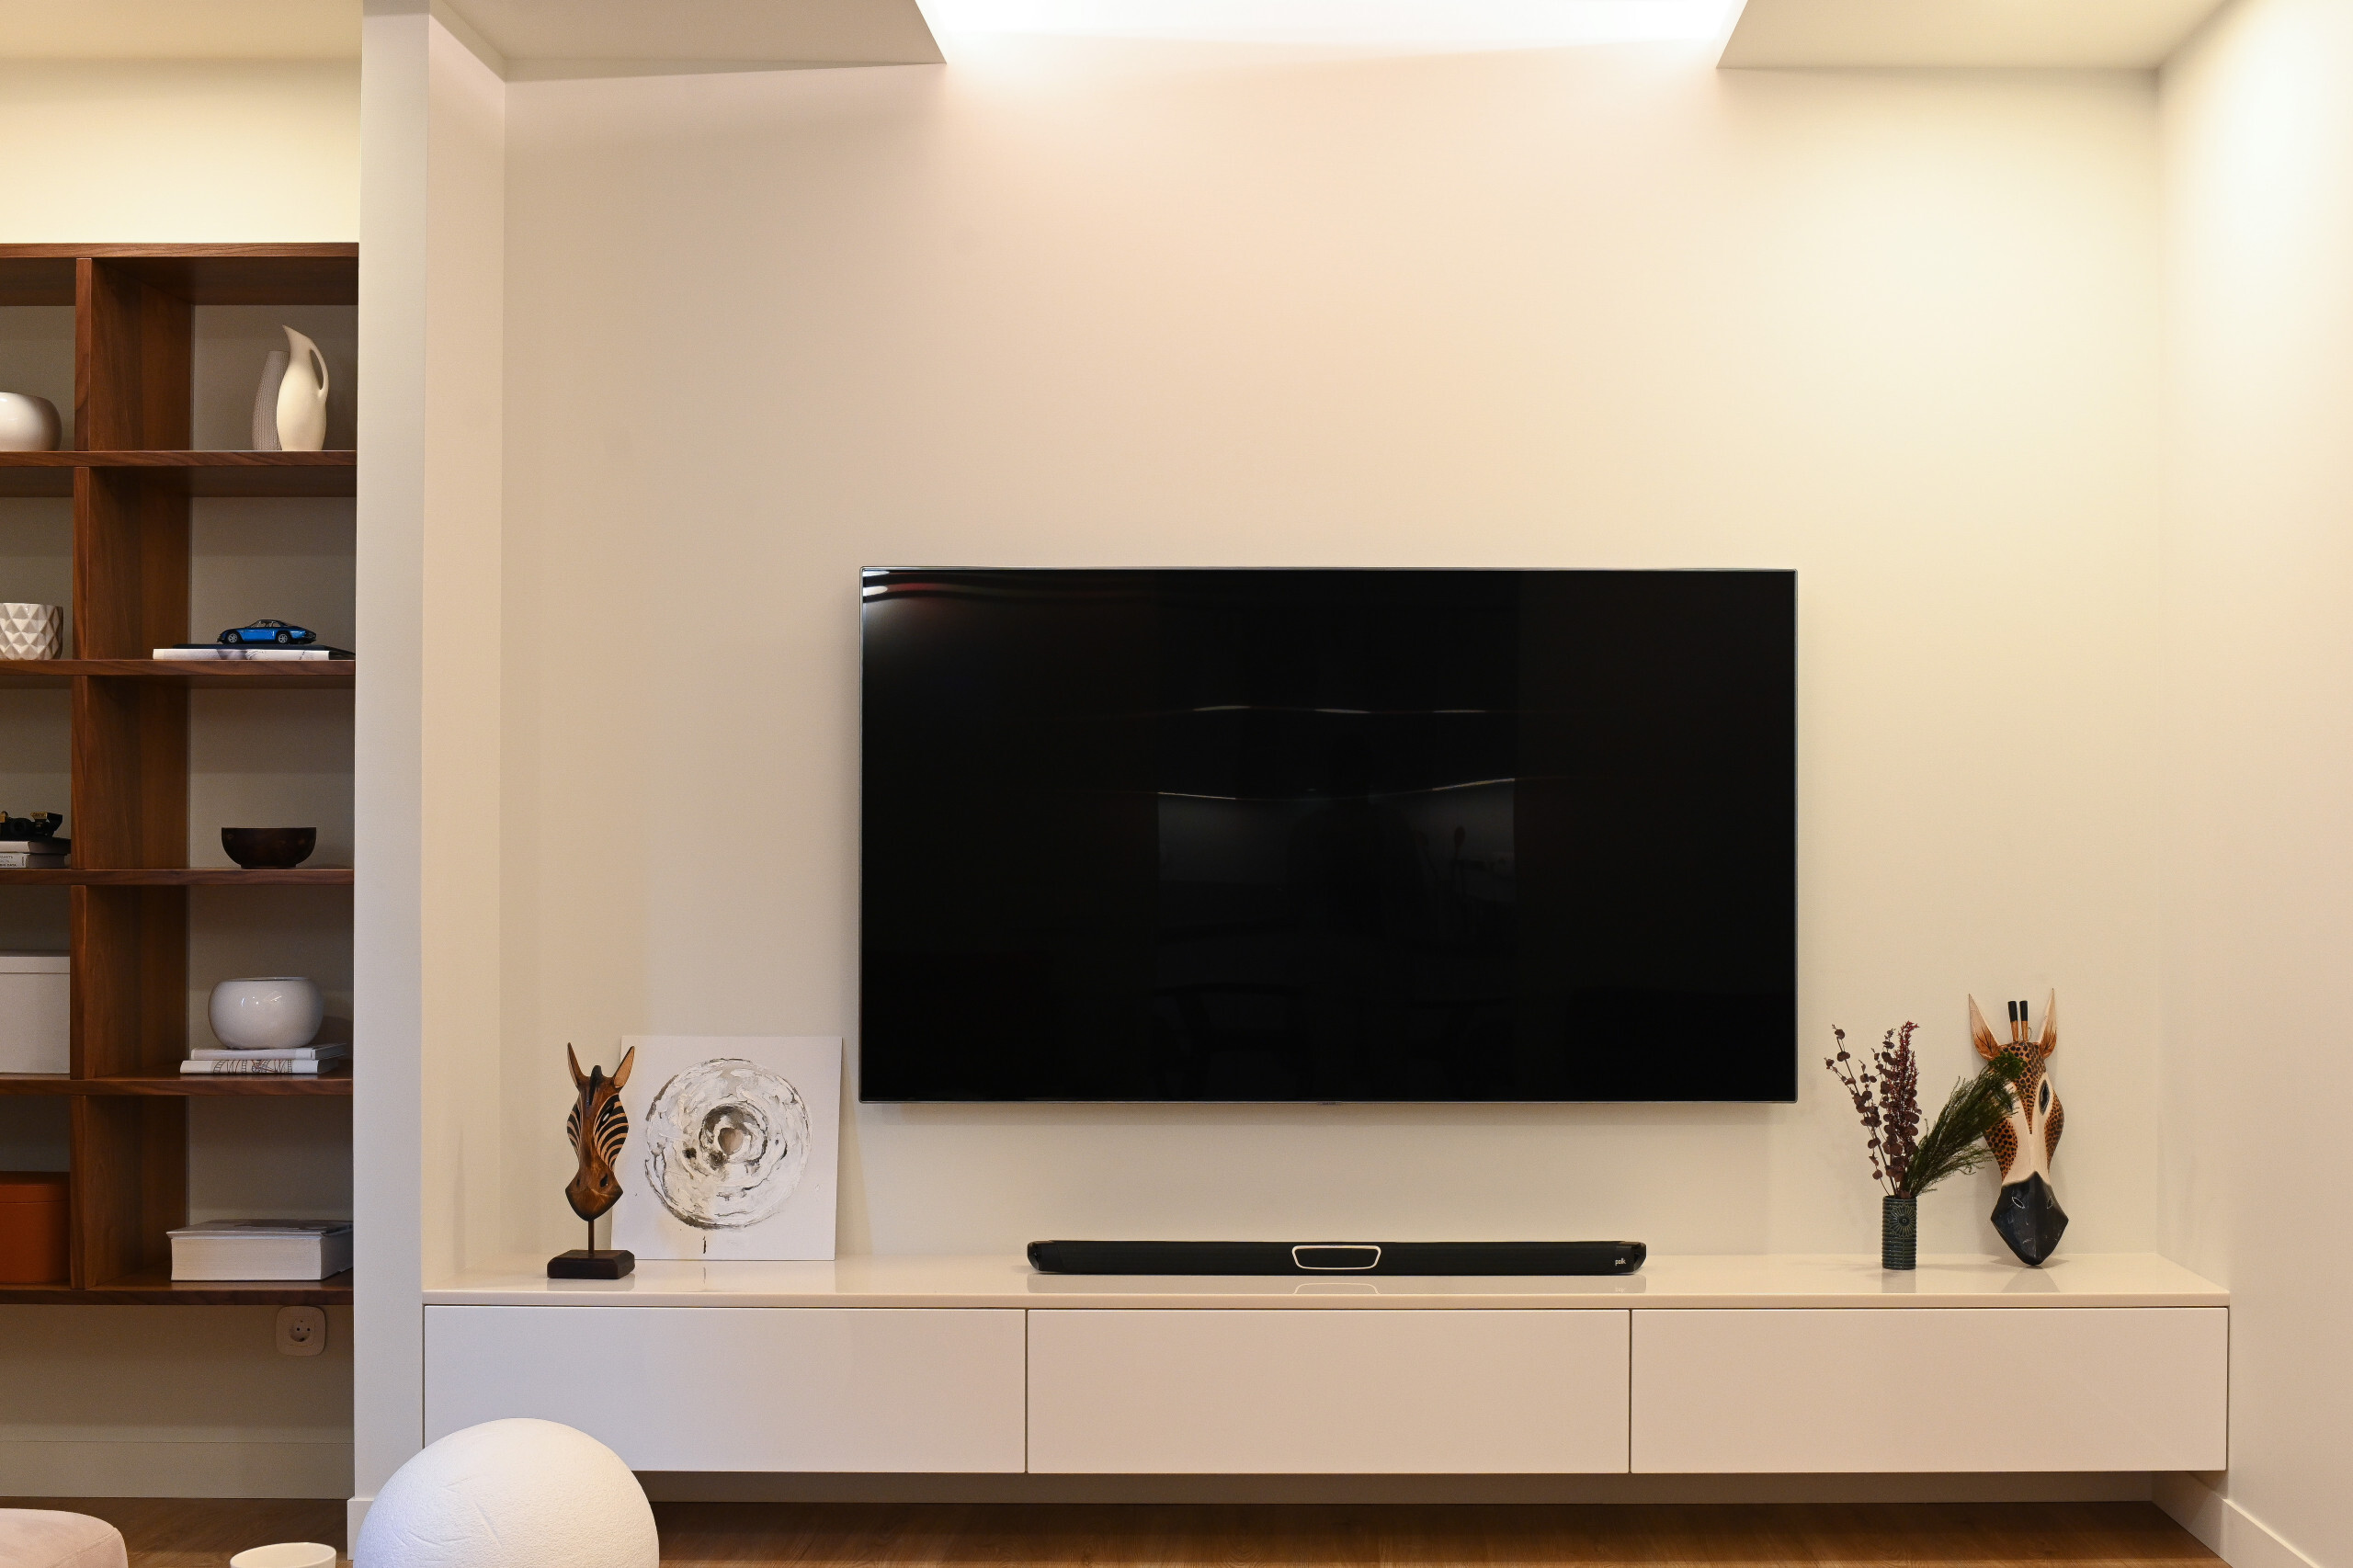 Интерьер гостиной cтеной с телевизором, телевизором на рейках, телевизором на стене, нишей для телевизора и керамогранитом на стену с телевизором